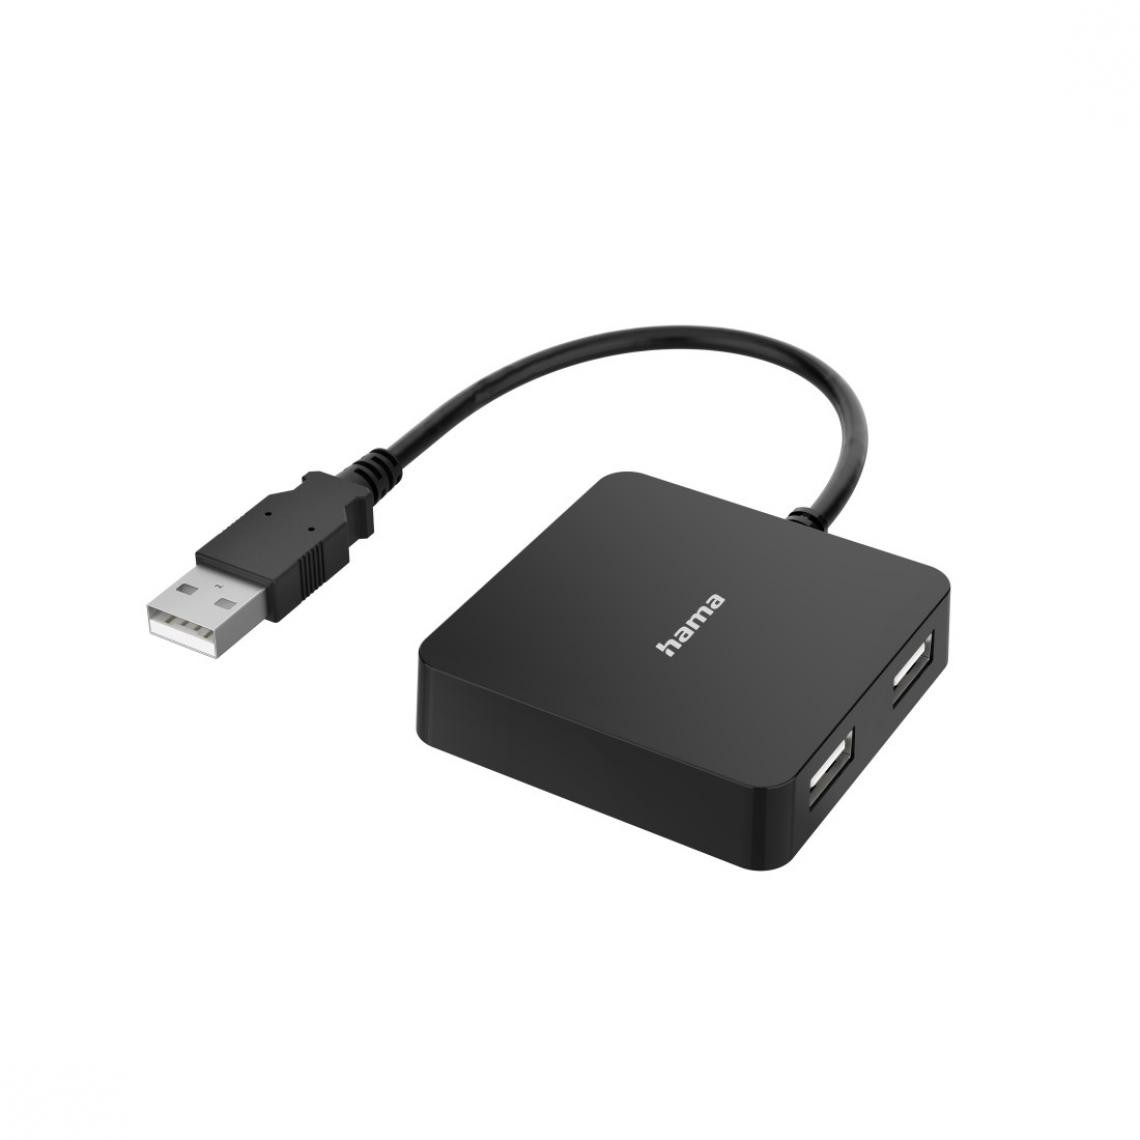 Hama - Hub USB, 4 ports, USB 2.0, 480 Gbit/s - Hub